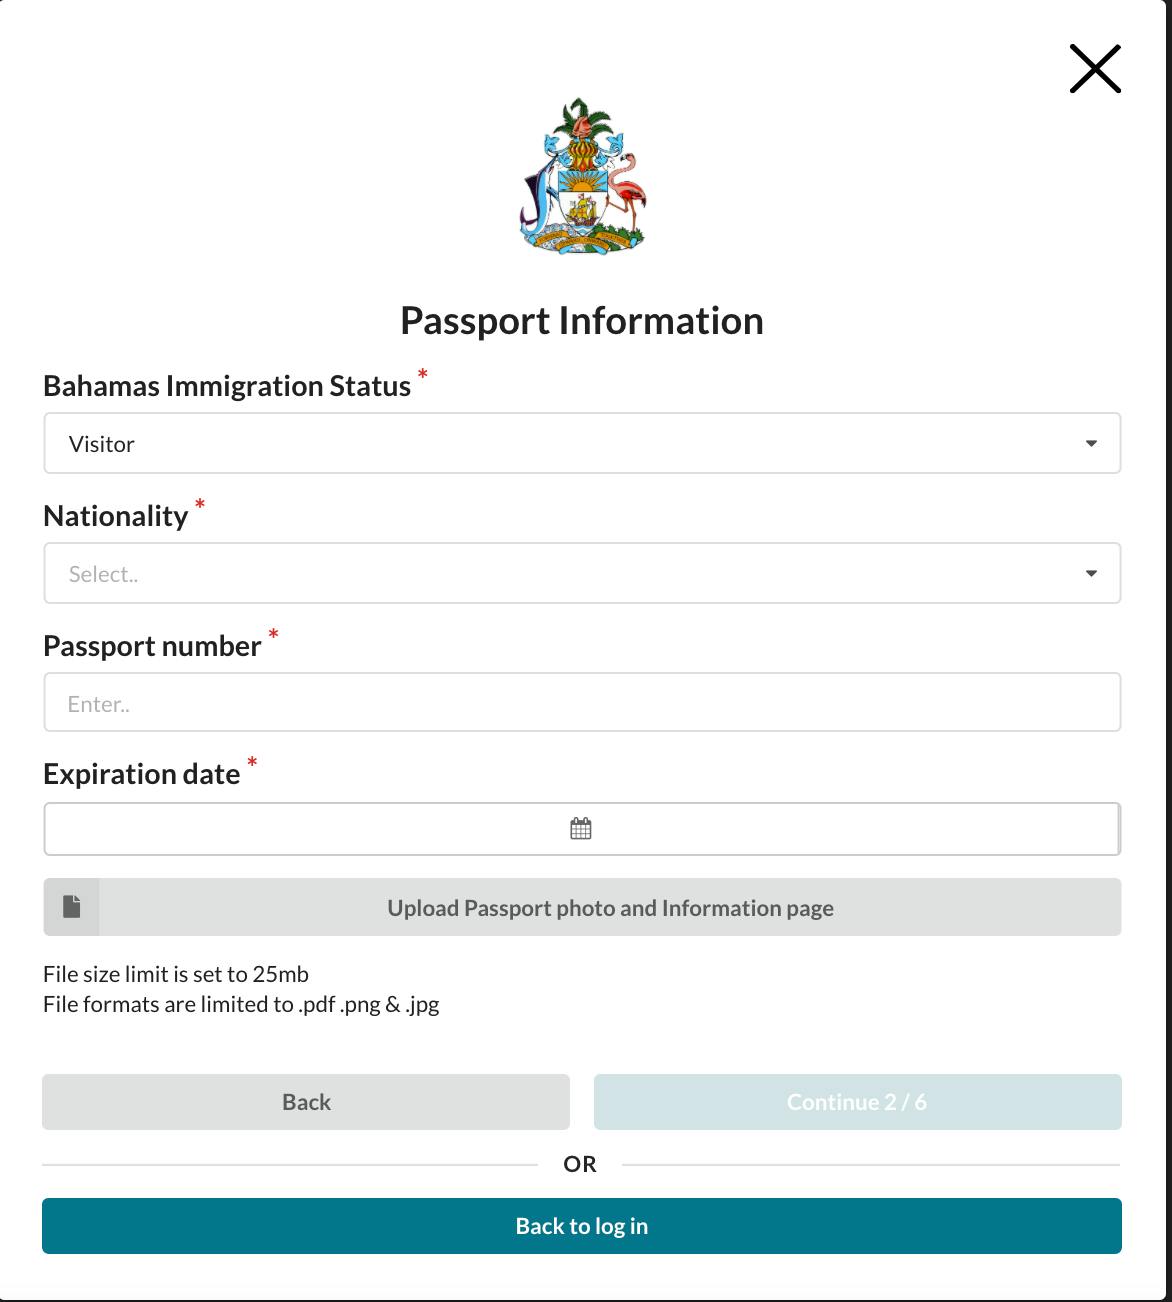 travel health visa bahamas login